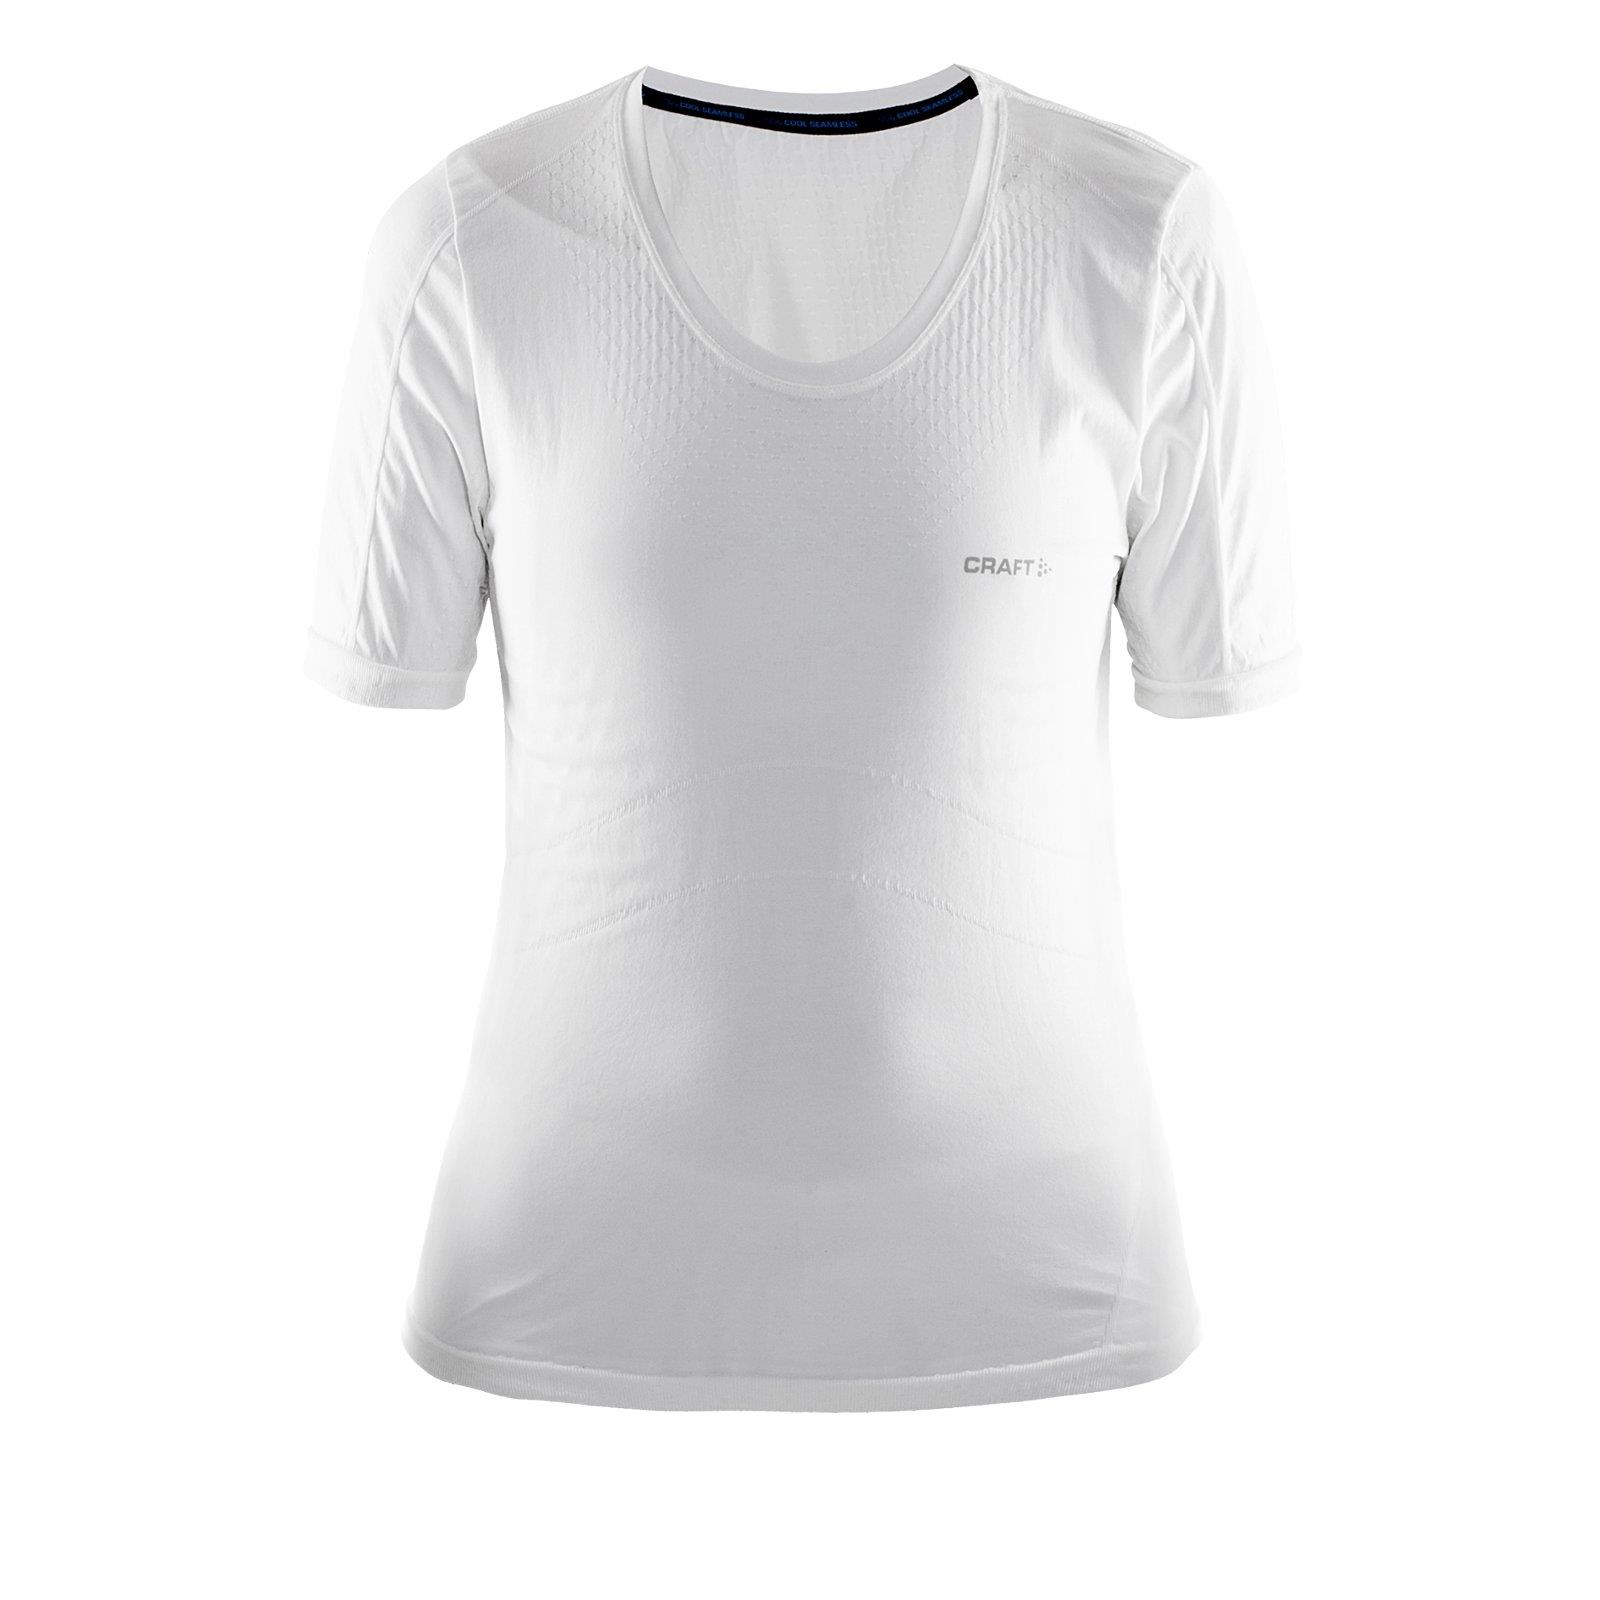 Analist Politiebureau residu Craft Cool Seamless Women's Short Sleeve Functional Shirt Women Sports Top  Cooling | eBay